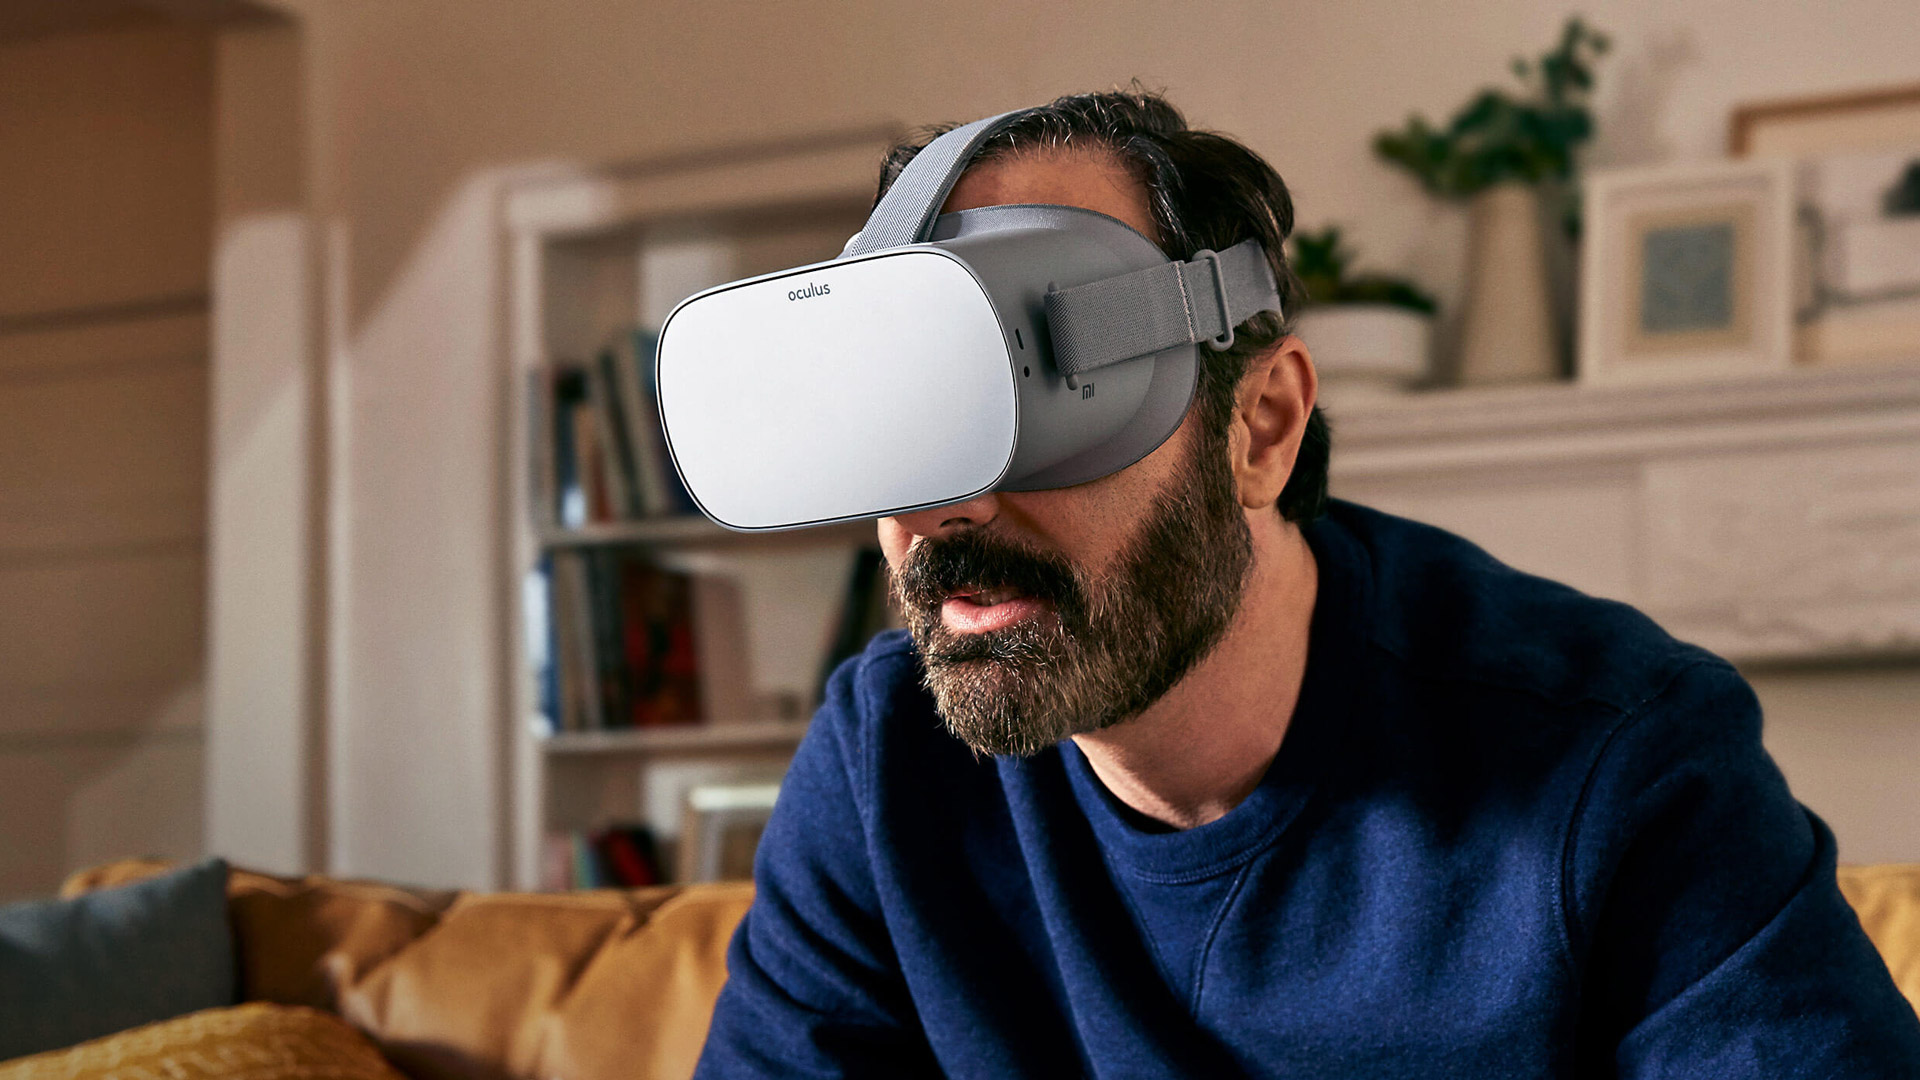 oculus go games 2020